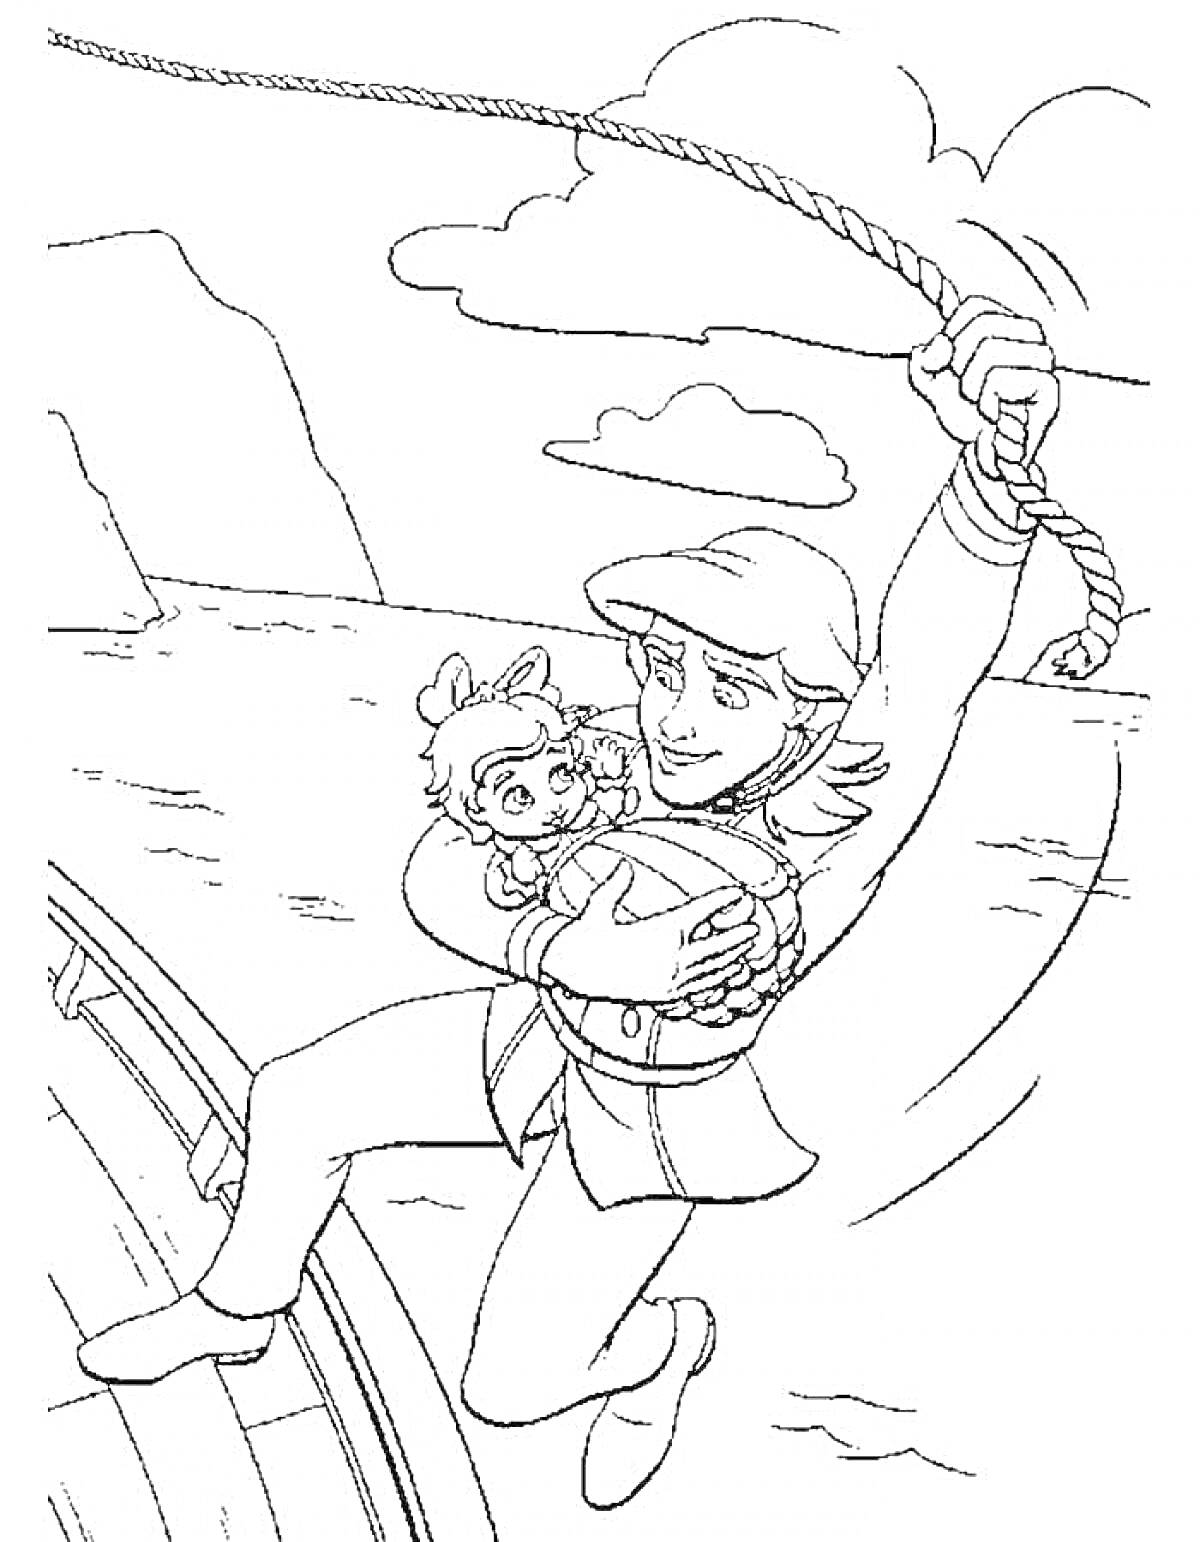 Раскраска Человек с ребенком, раскачивающиеся на канате над лодкой и водой, на фоне холмов и облаков